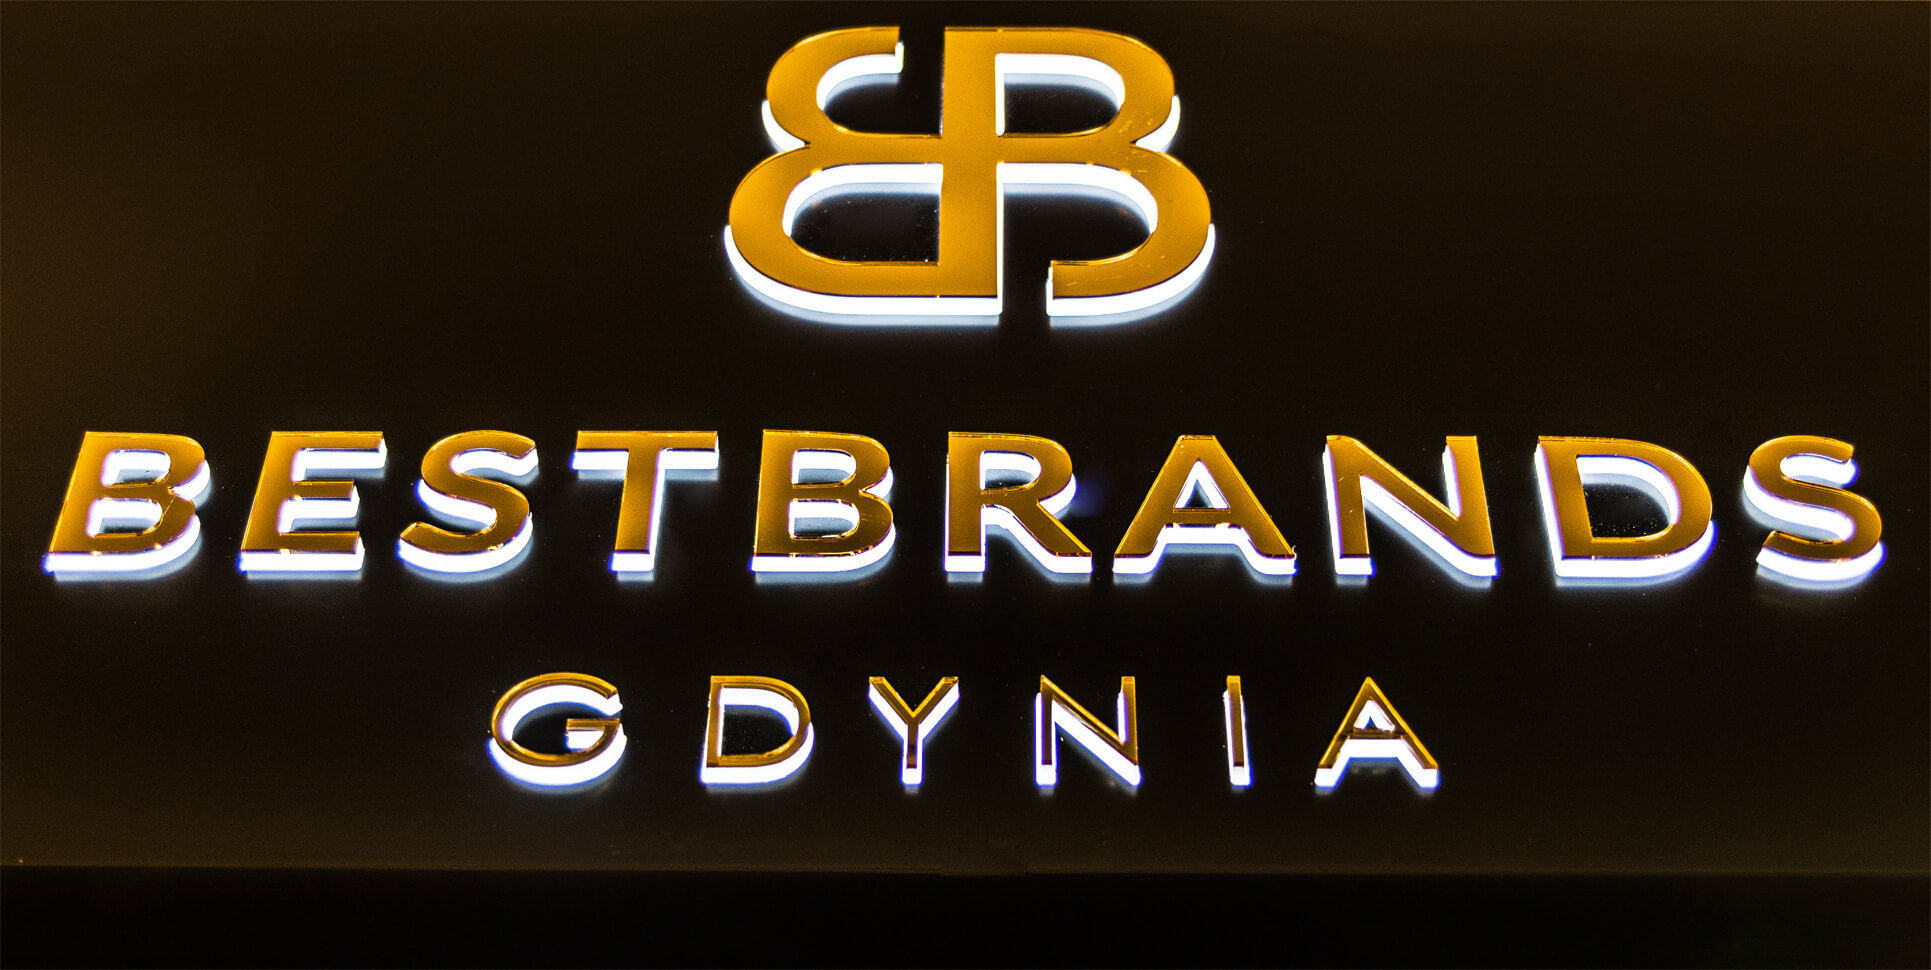 Bestbrands Gdynia - Bestbrands Gdynia - coffret publicitaire lumineux placé au-dessus de l'entrée